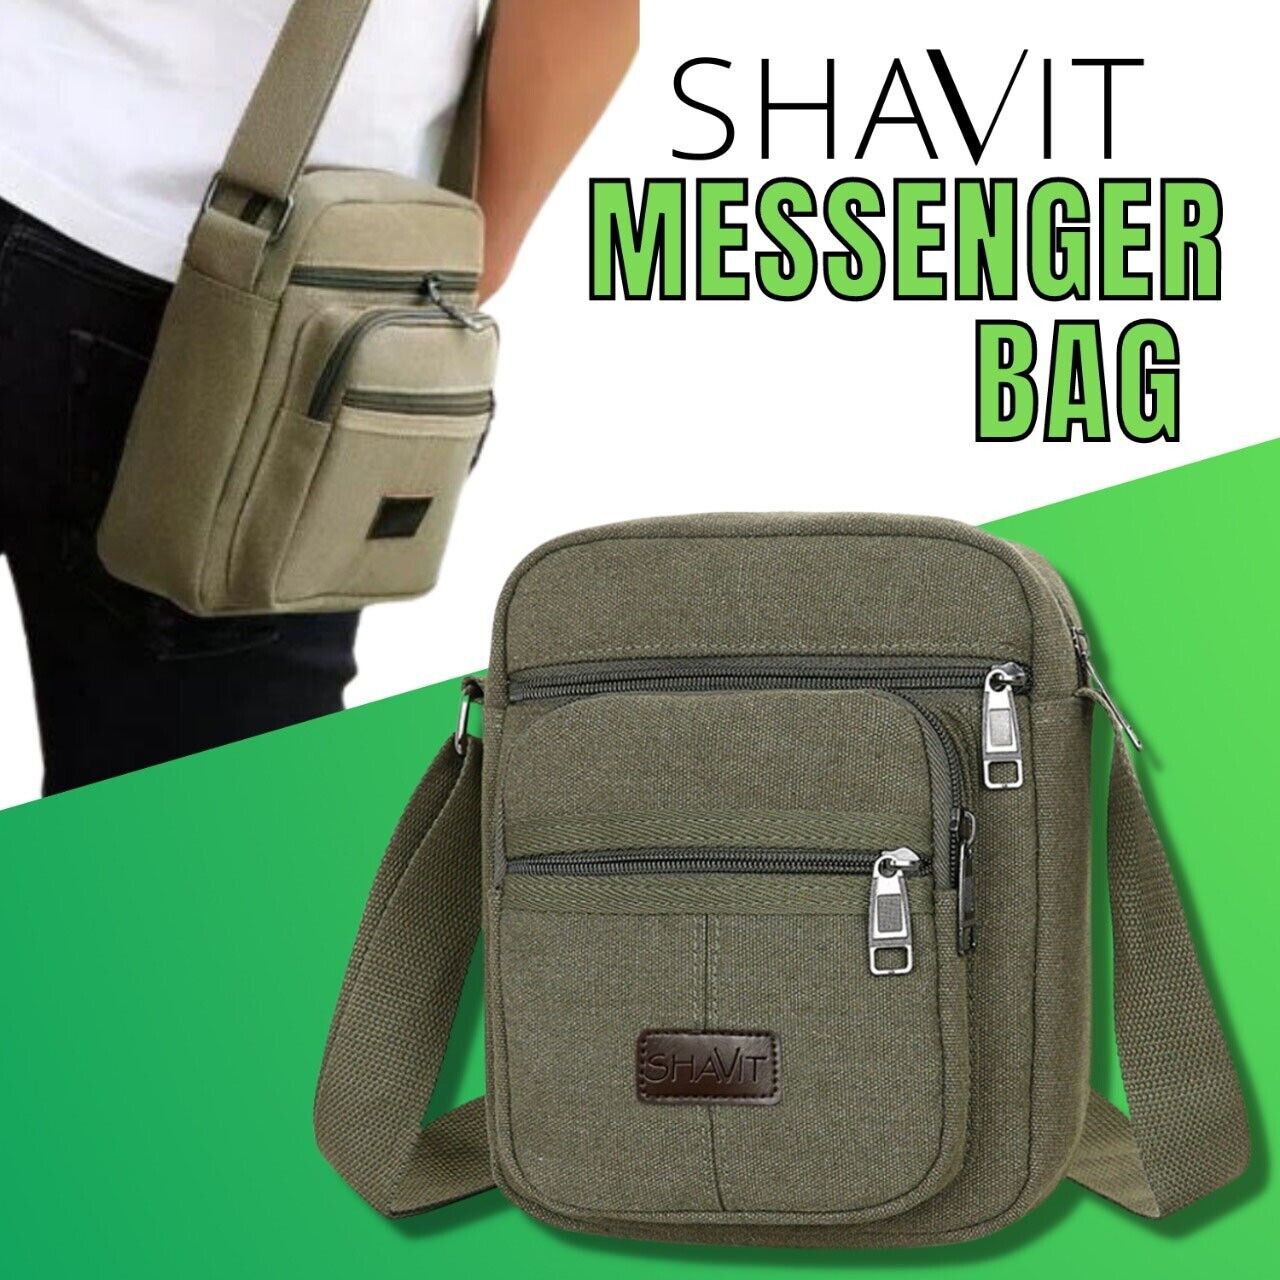 Messenger Bag Shoulder Bag Crossbody Canvas Bags Casual Satchel Vintage Bag Modern Lifestyle Shopping